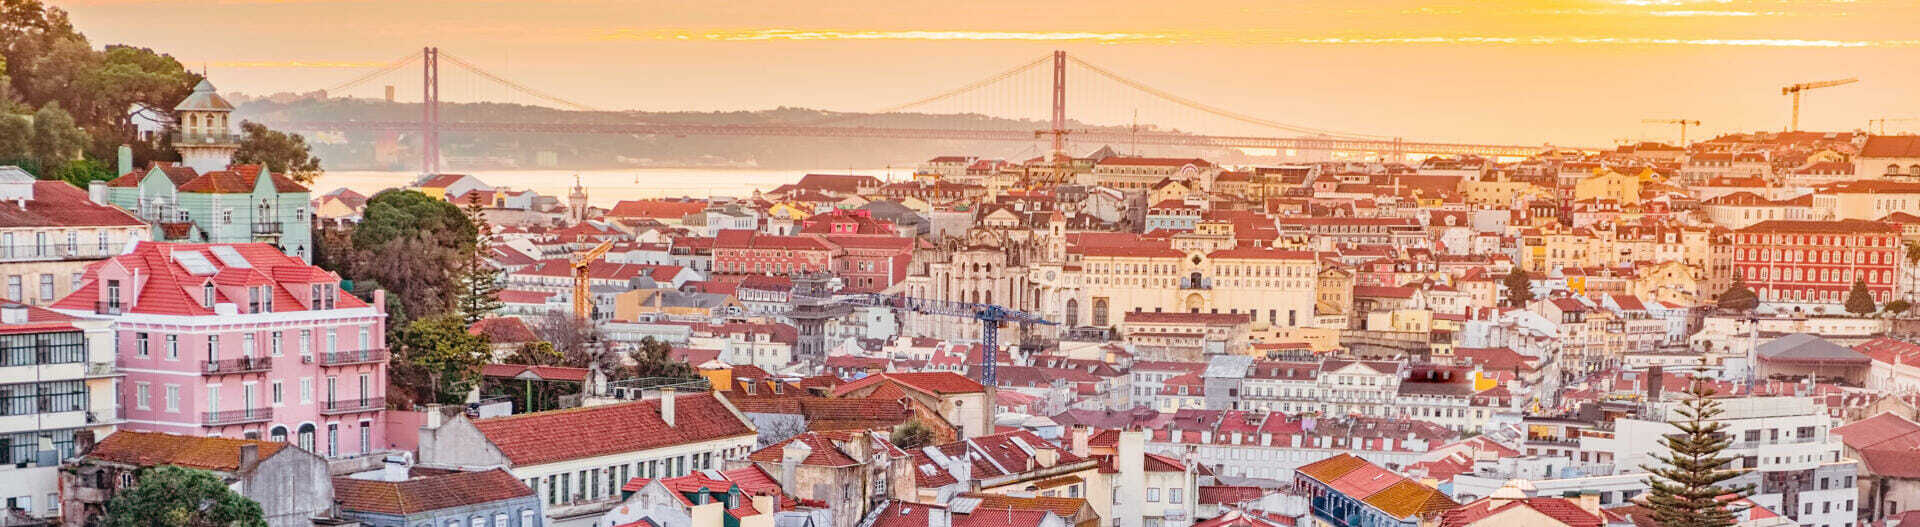 Lizbona atrakcje - most 25. kwietnia